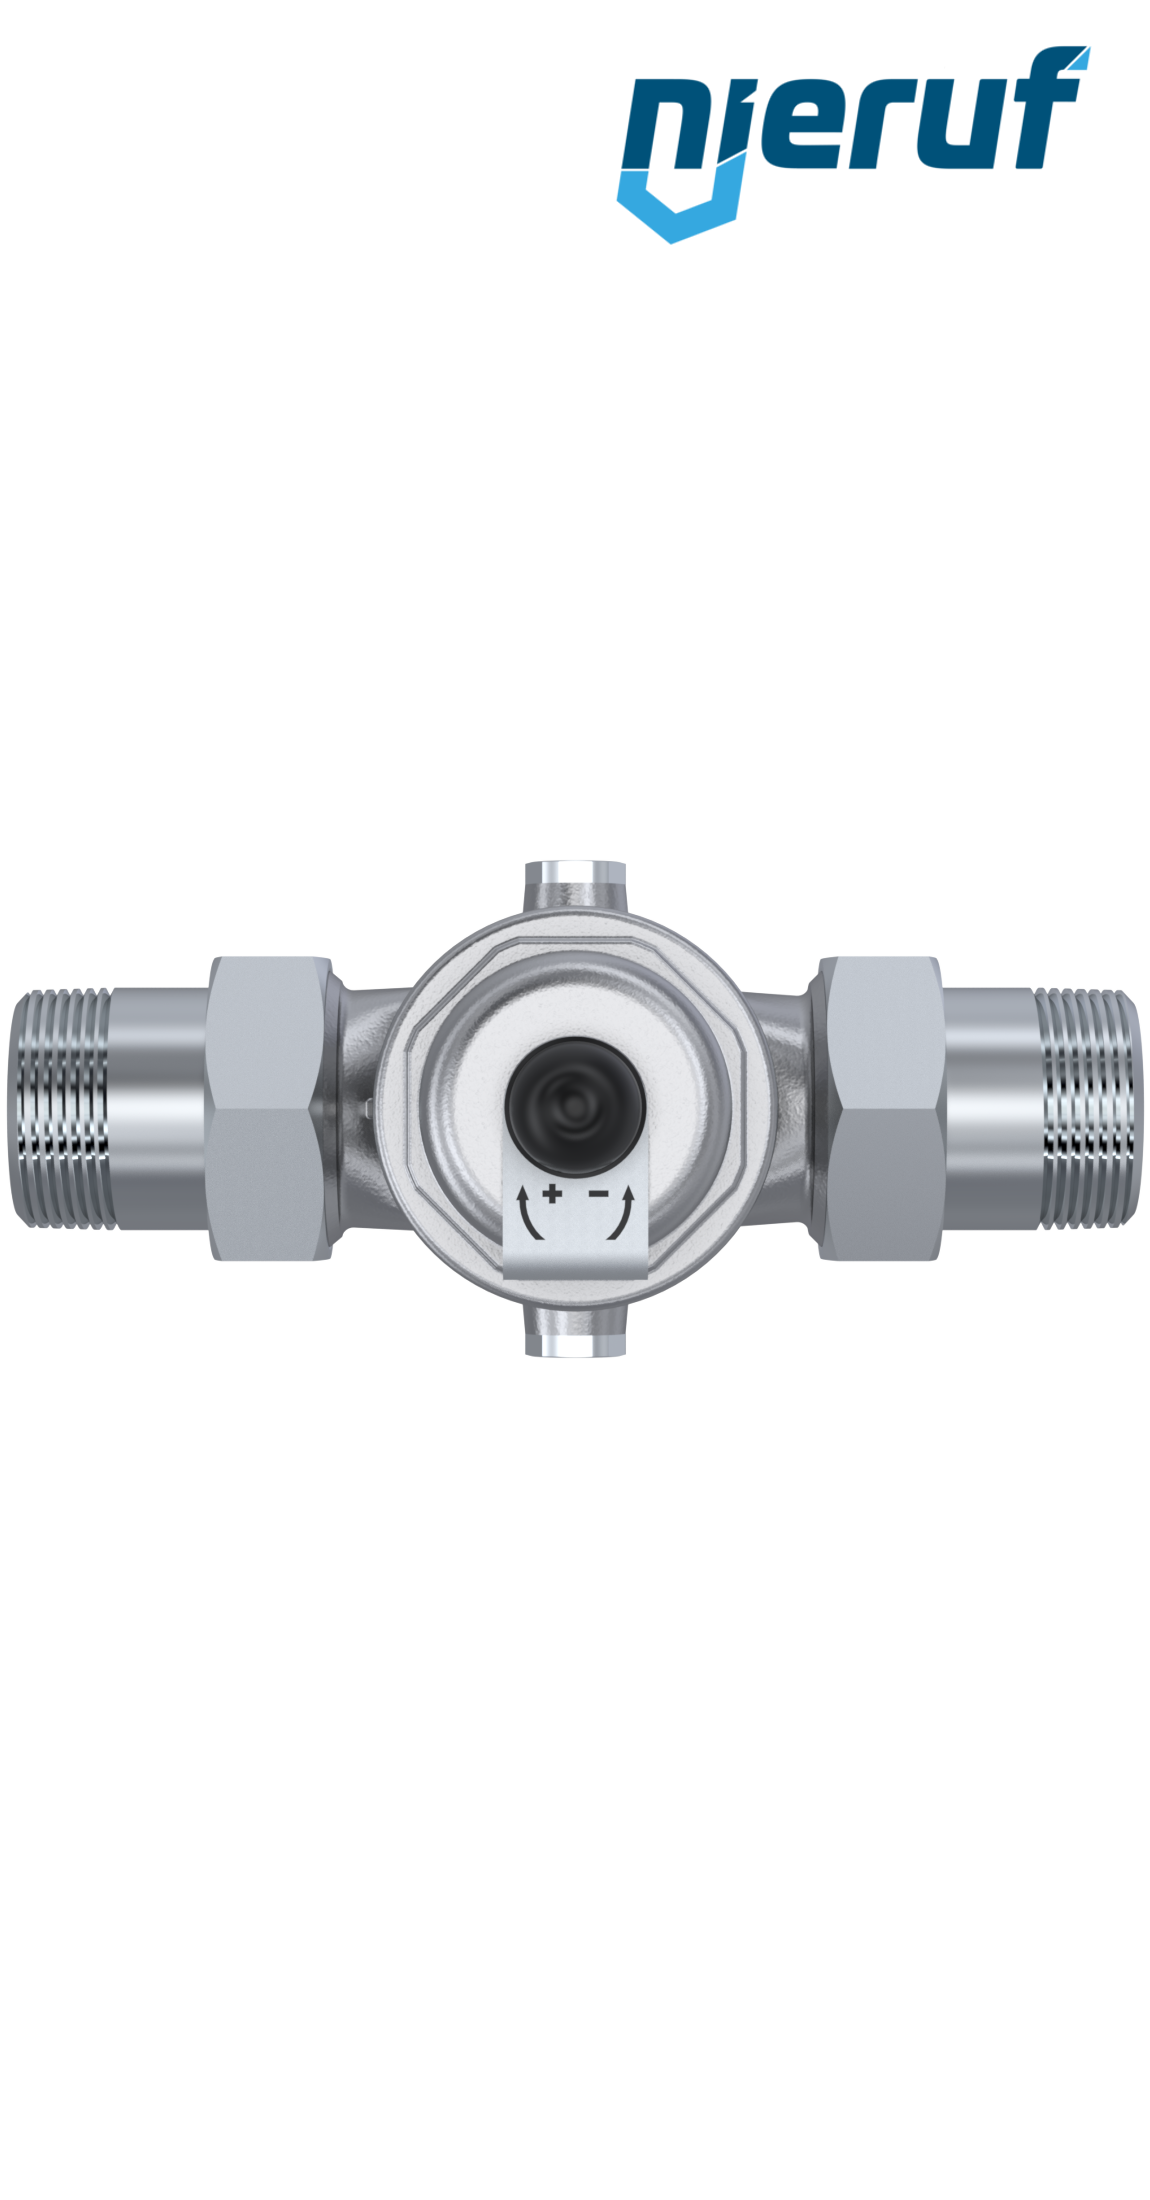 pressure reducing valve 1 1/4" inch male thread DM04 stainless steel FKM 0.5 - 2.0 bar